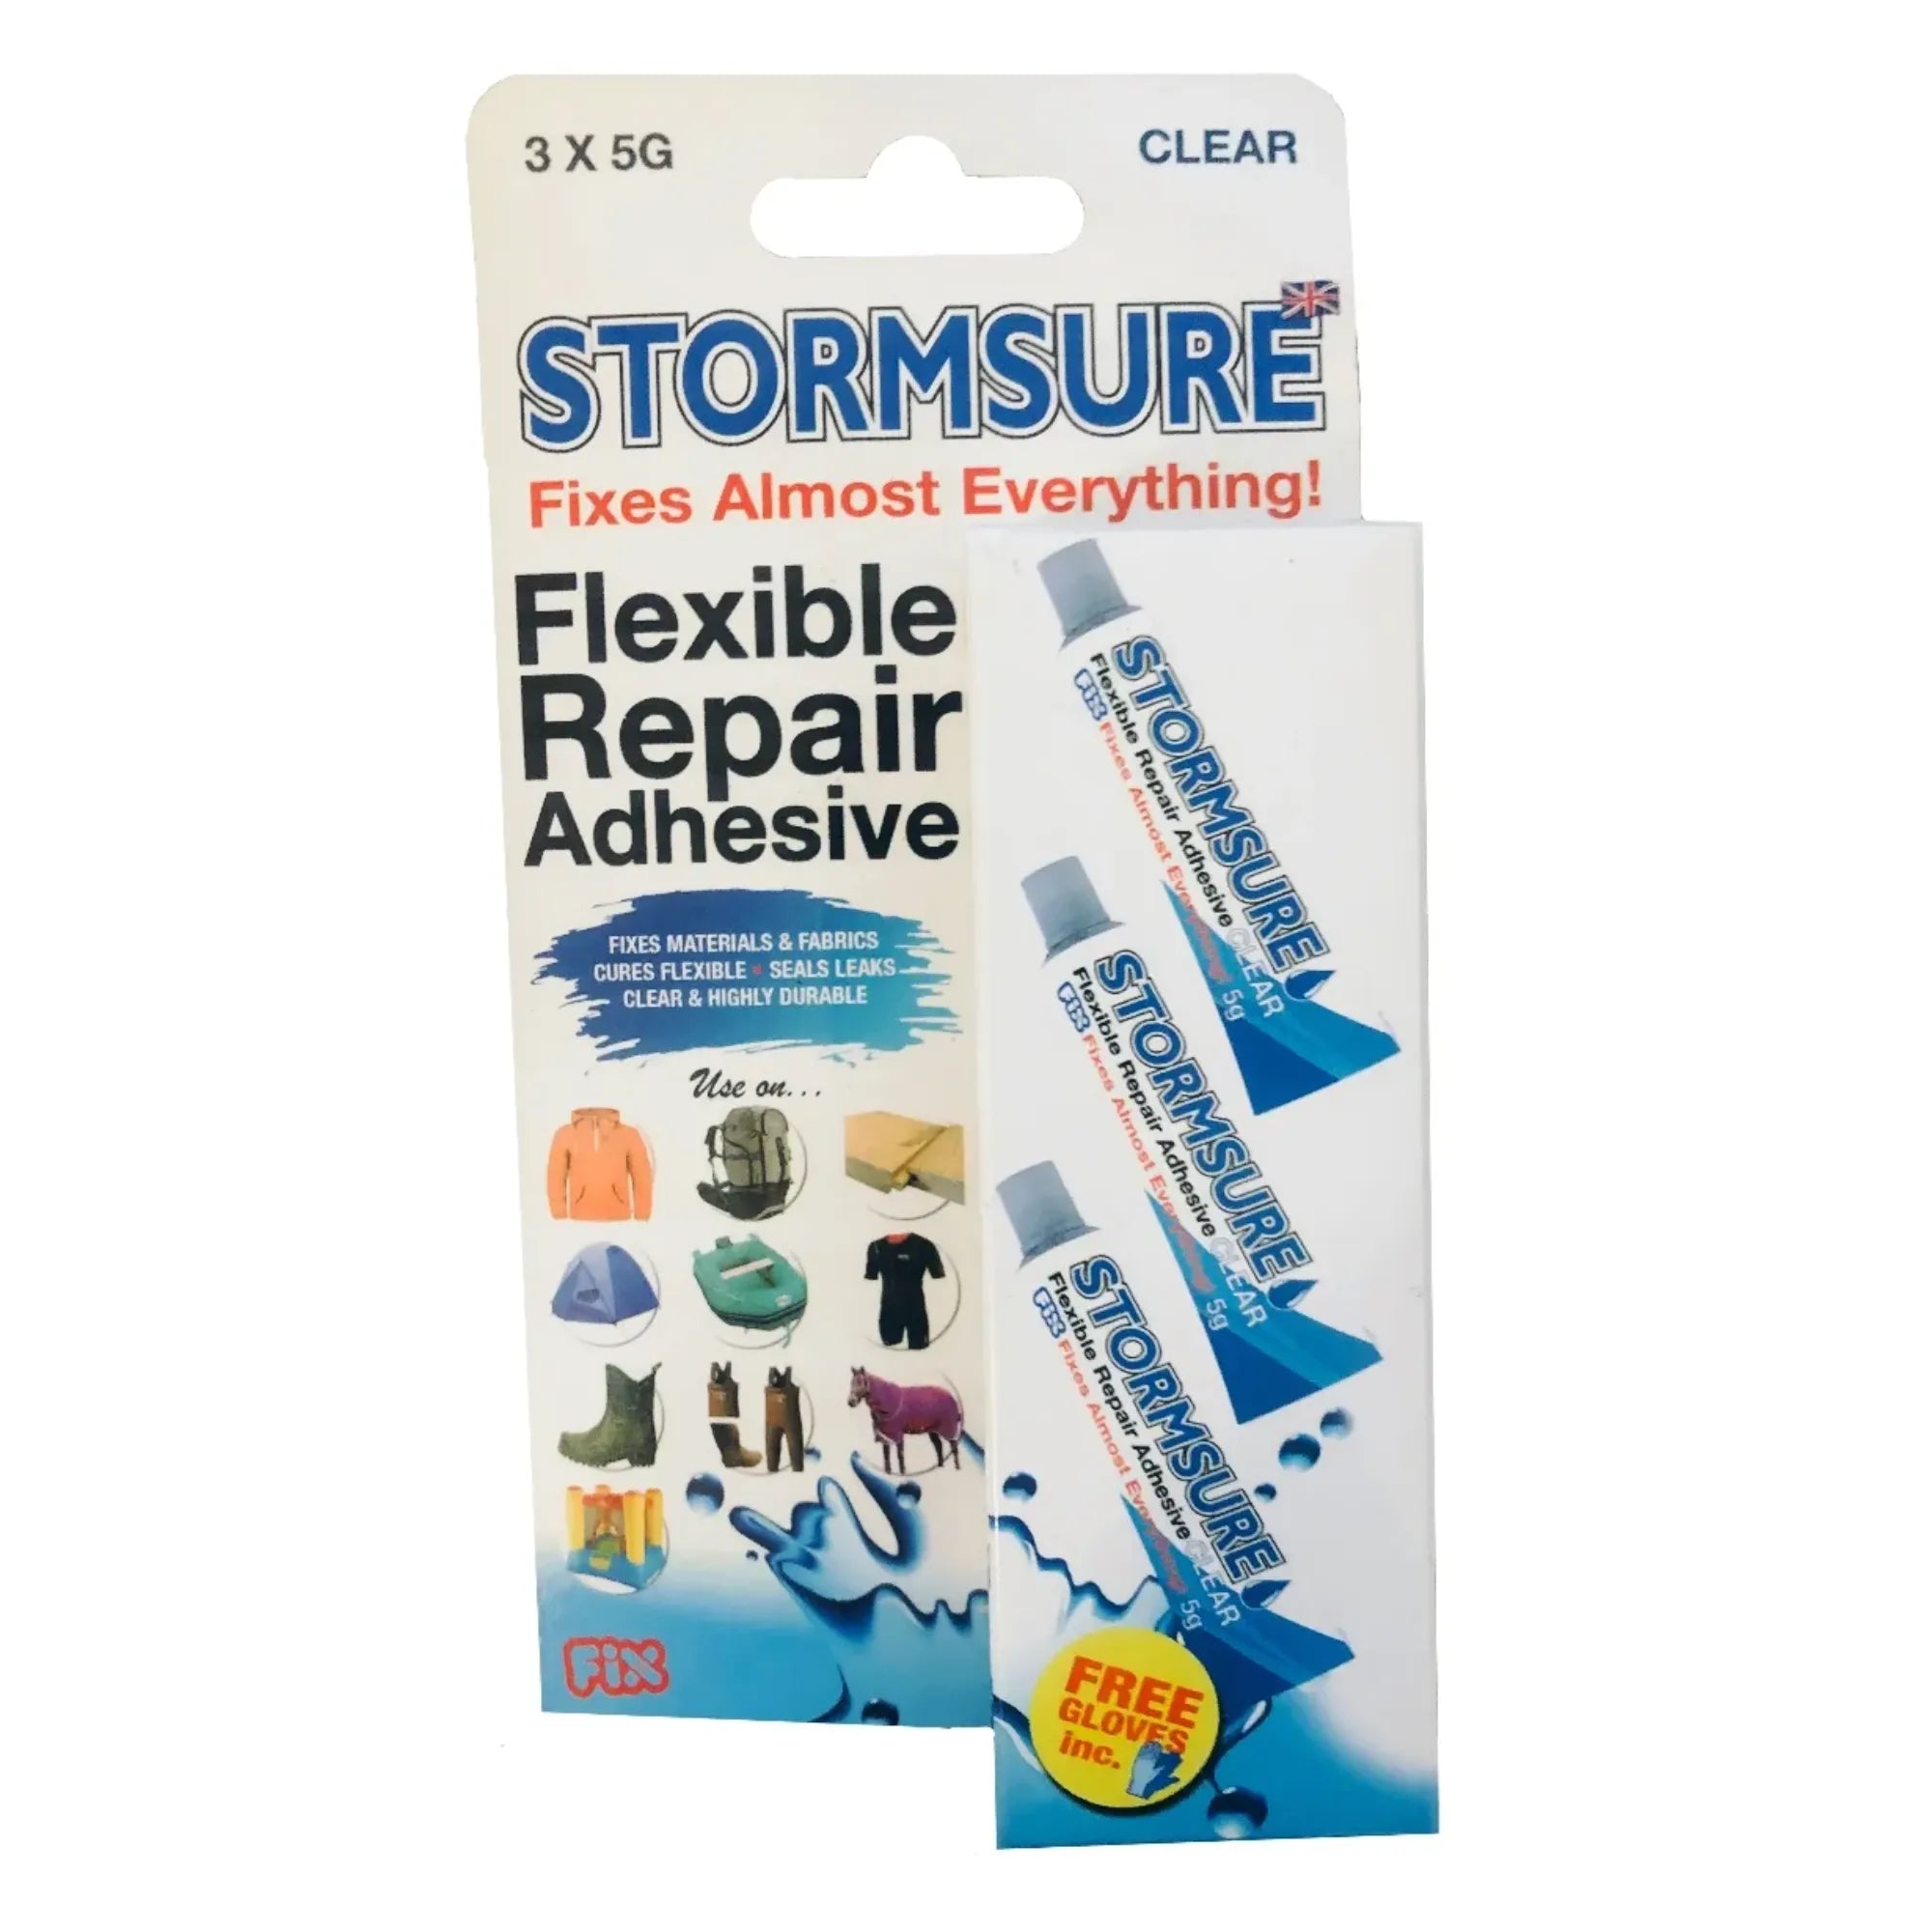 Flexible Repair Adhesive (3 x 5g Tubes) - Clear